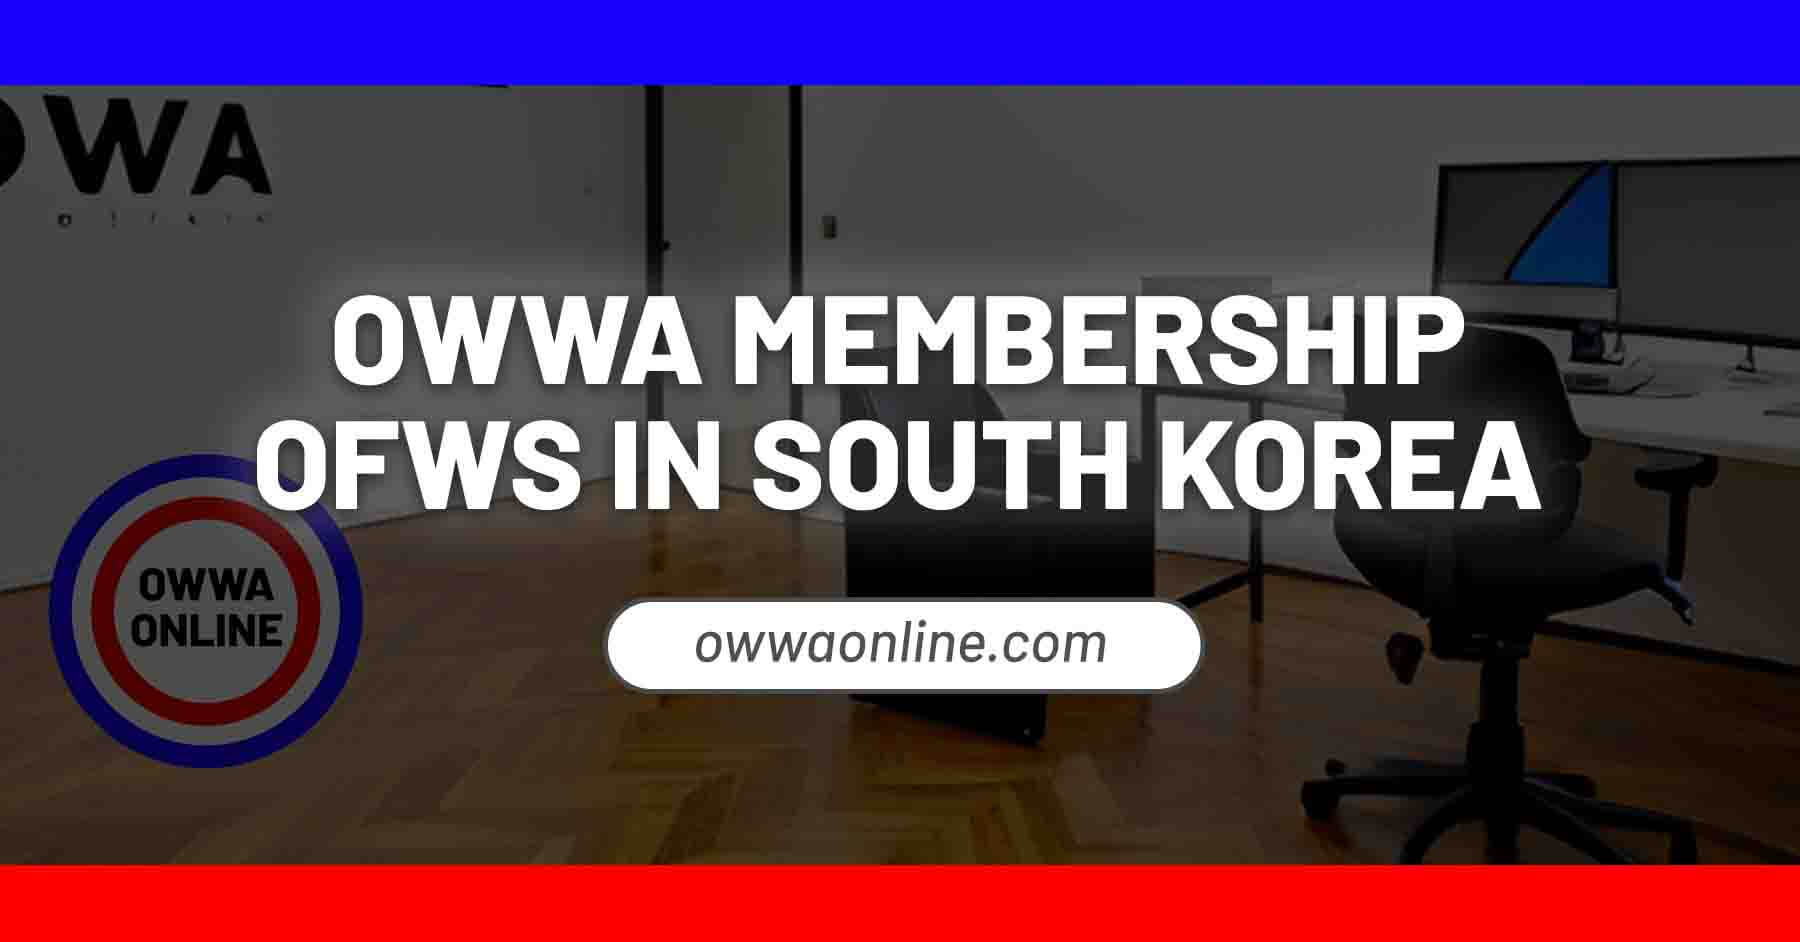 owwa membership application renewal in South Korea